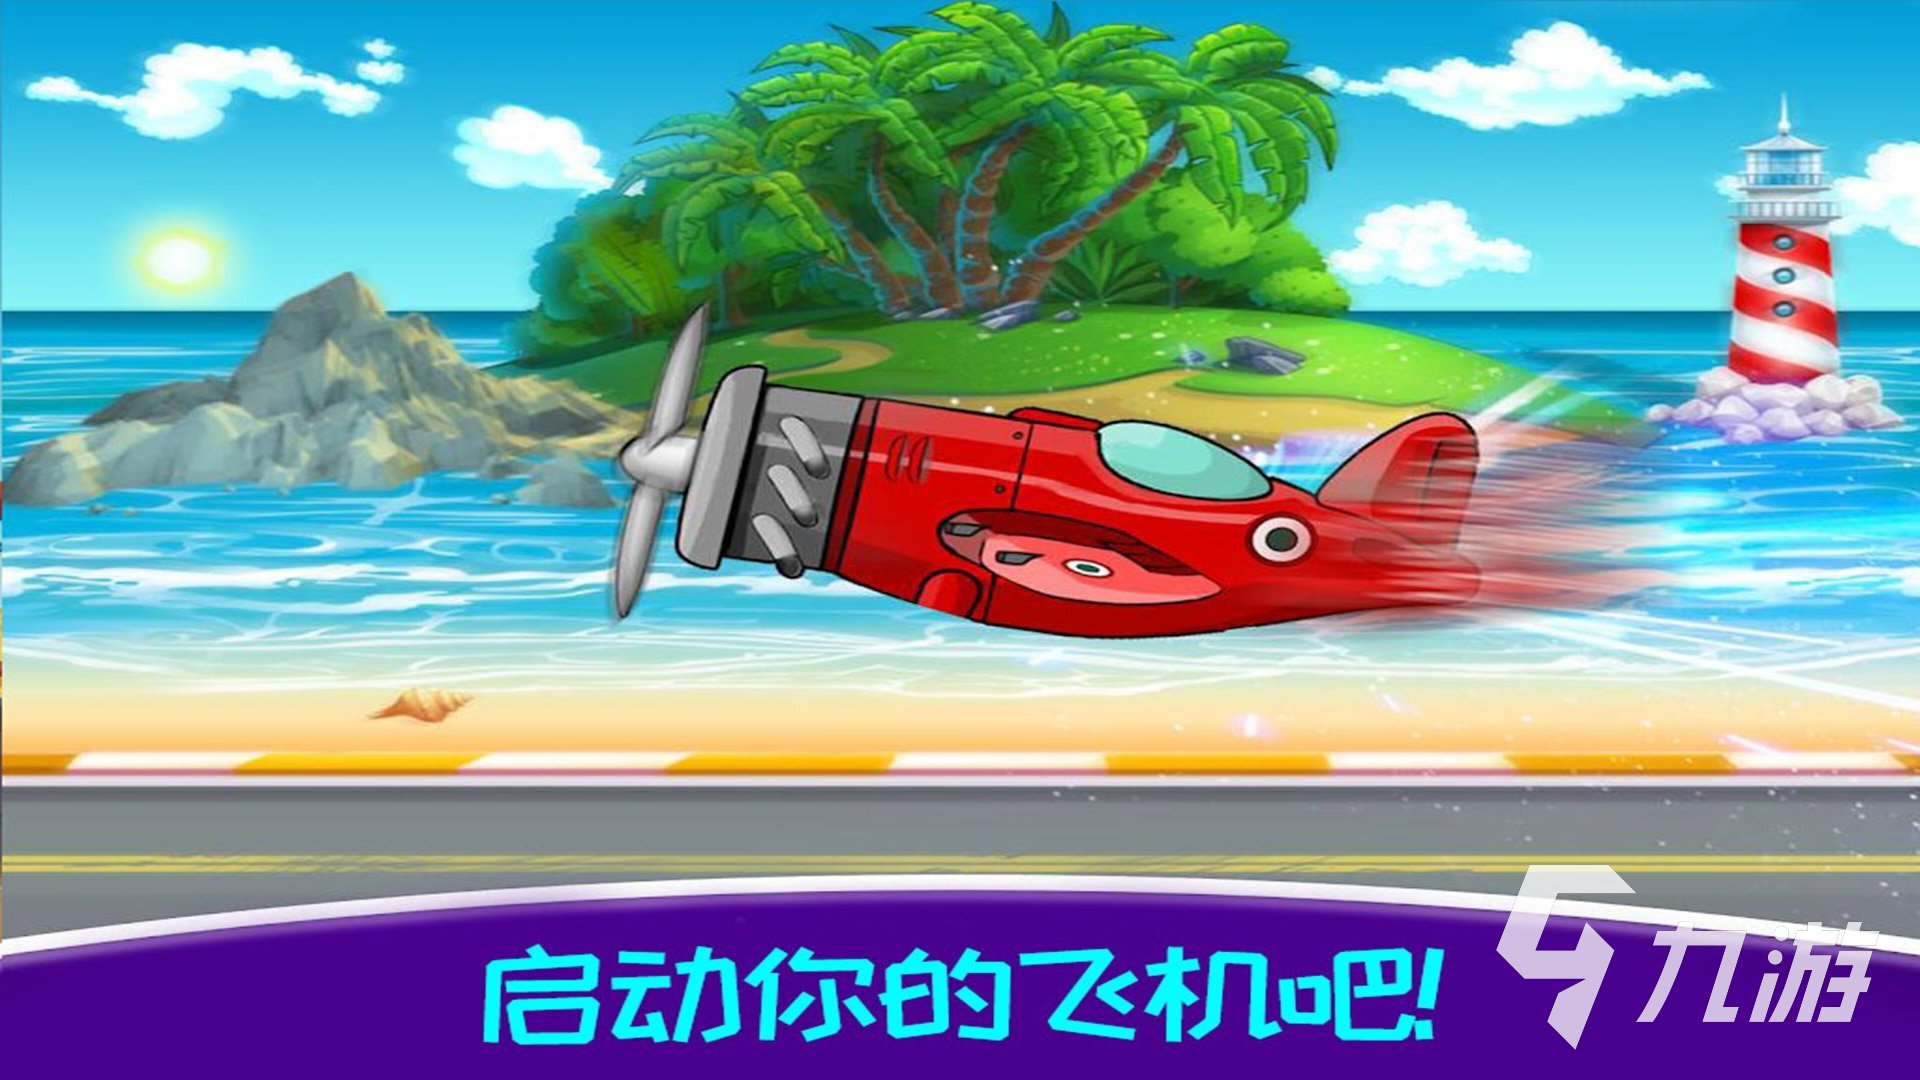 飞机游戏大全单机版有哪些 单机飞机类的游戏介绍